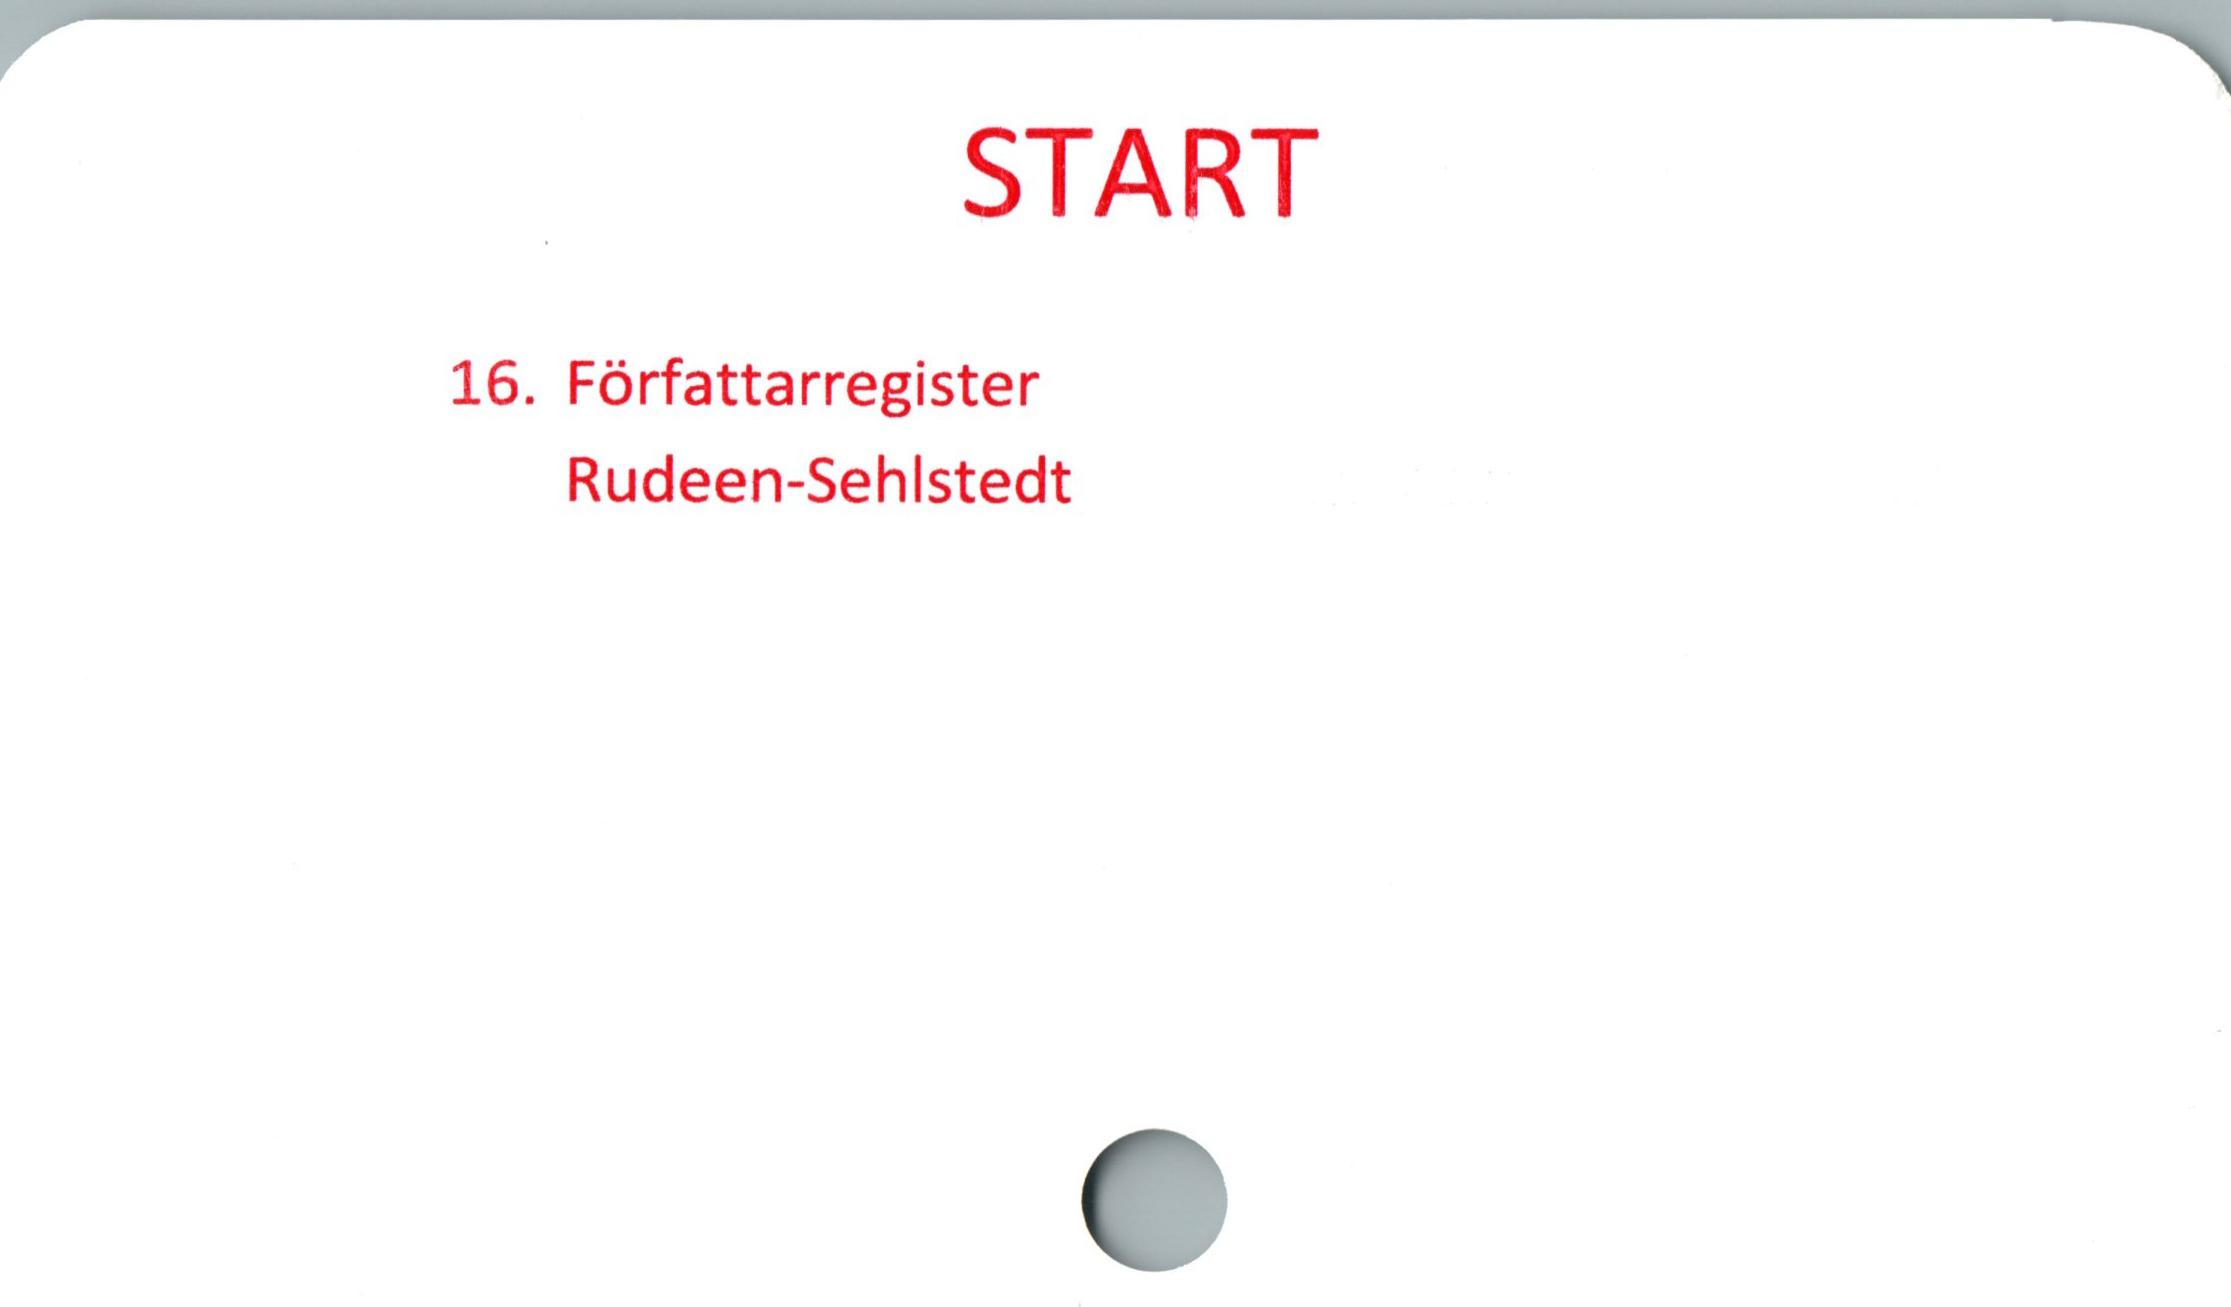  ﻿START

16. Författarregister
Rudeen-Sehlstedt